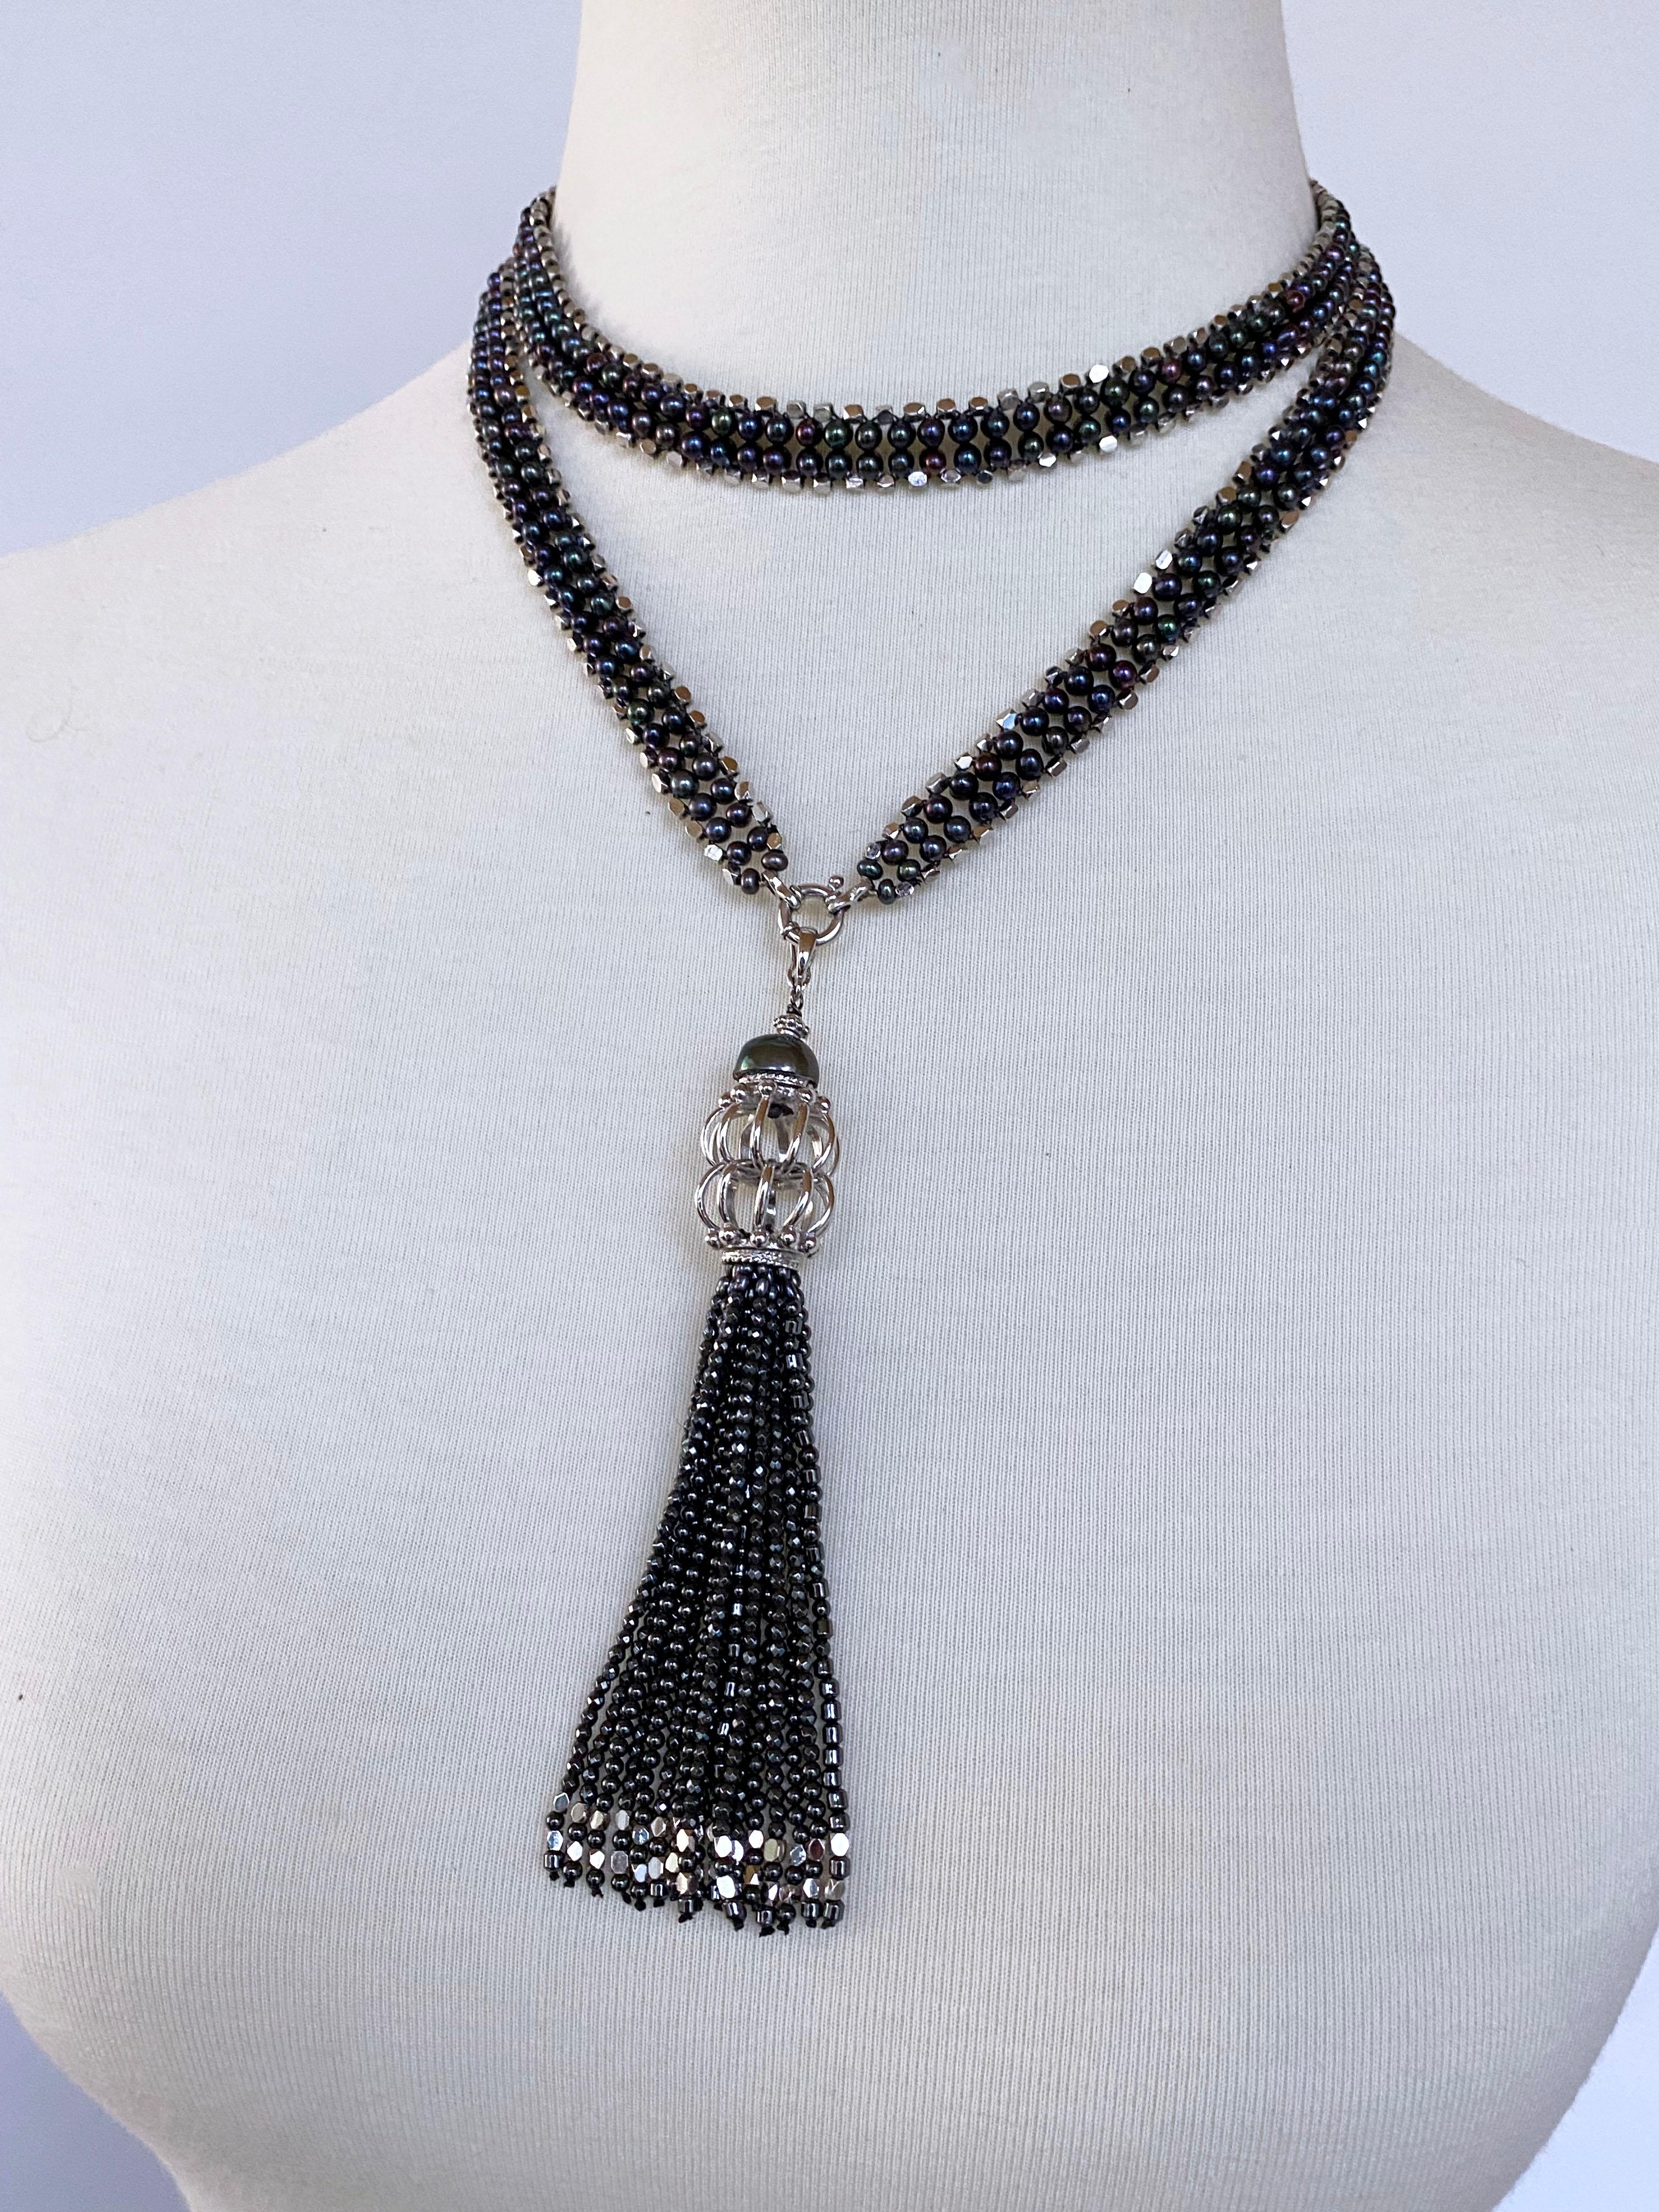 Superbe pièce unisexe de Marina J. Ce Sautoir à double brin est composé de perles noires et de perles géométriques en argent à facettes tissées ensemble en un motif à double colonne. Les perles noires présentent un éclat multicolore semblable à